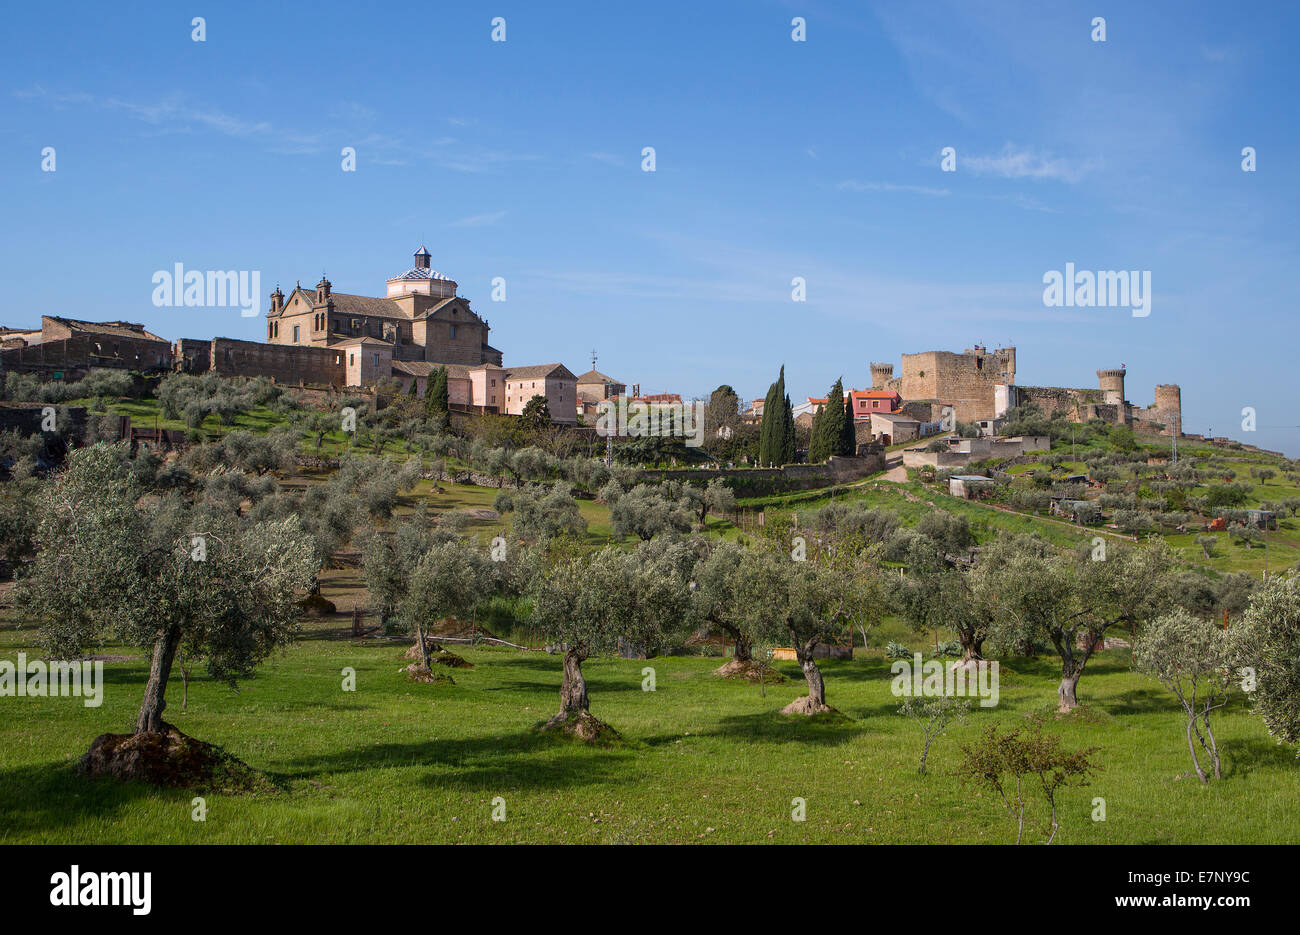 Castile, Castle, City, Oropesa castle, Spain, Europe, architecture, history, la Mancha, landscape, skyline, tourism, travel Stock Photo